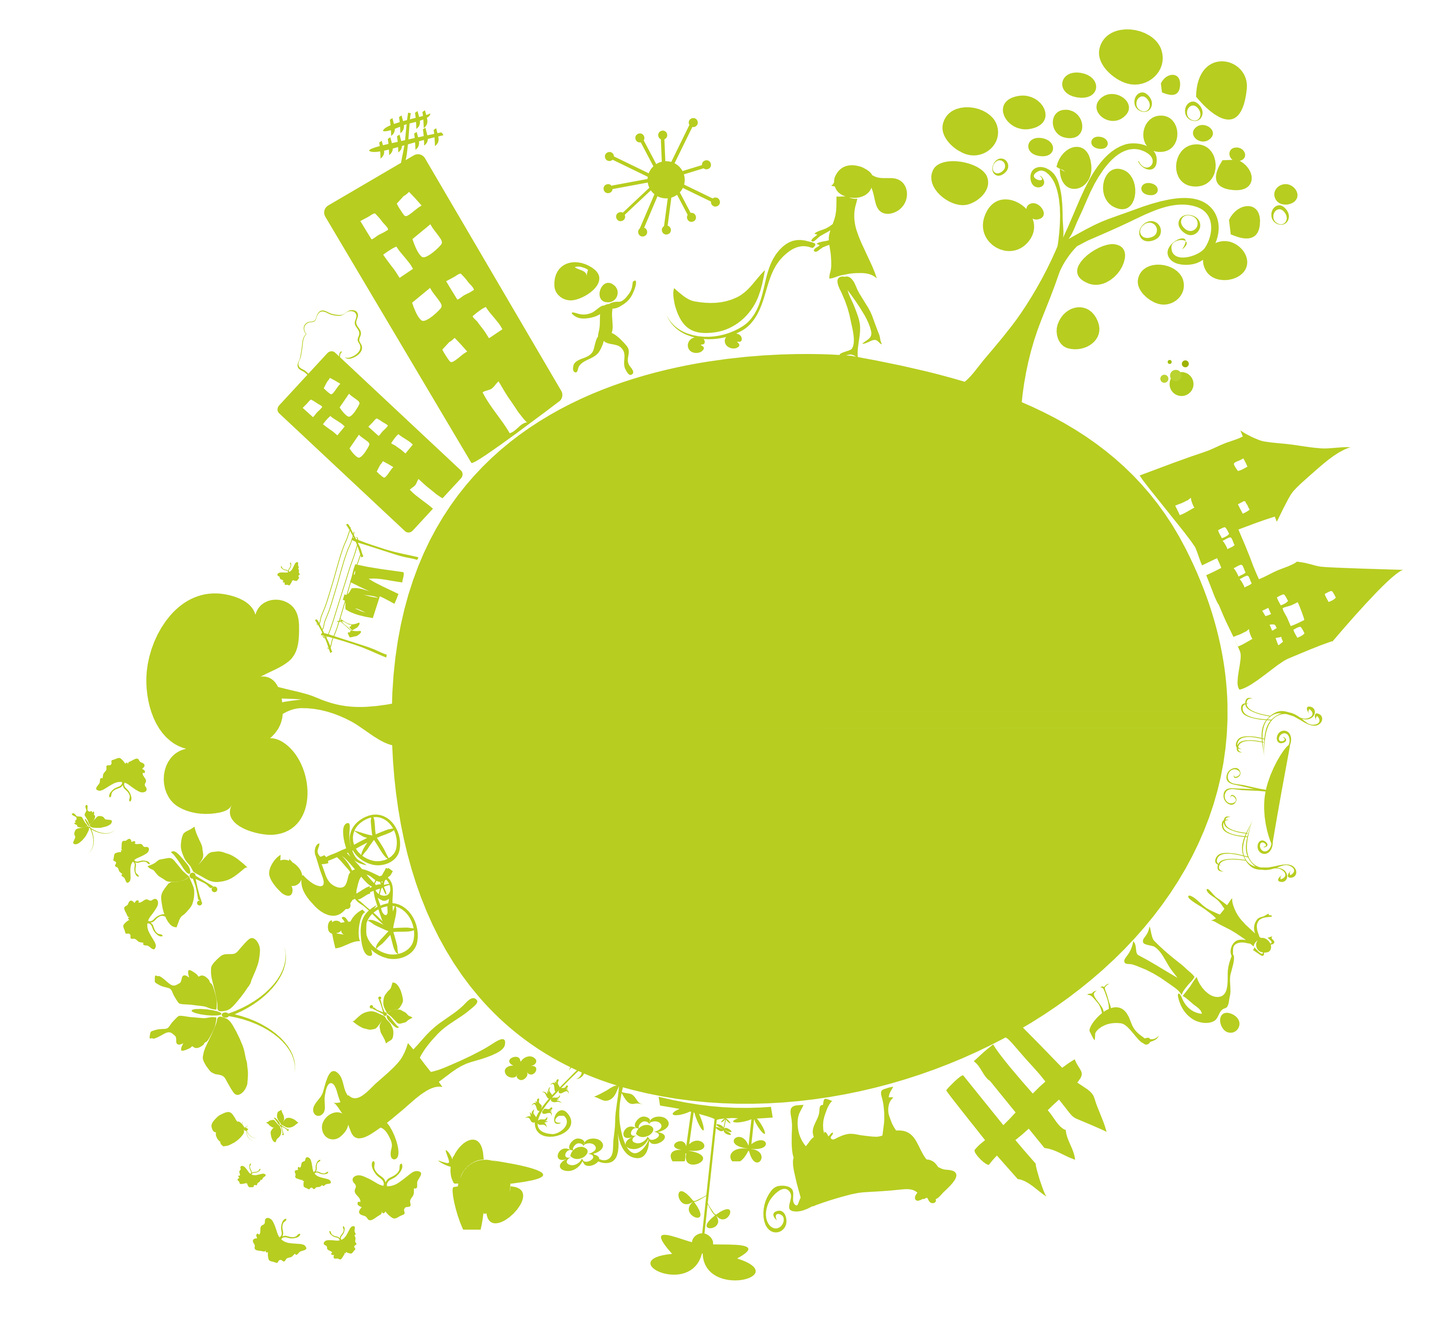 Smart City_ Green Economy